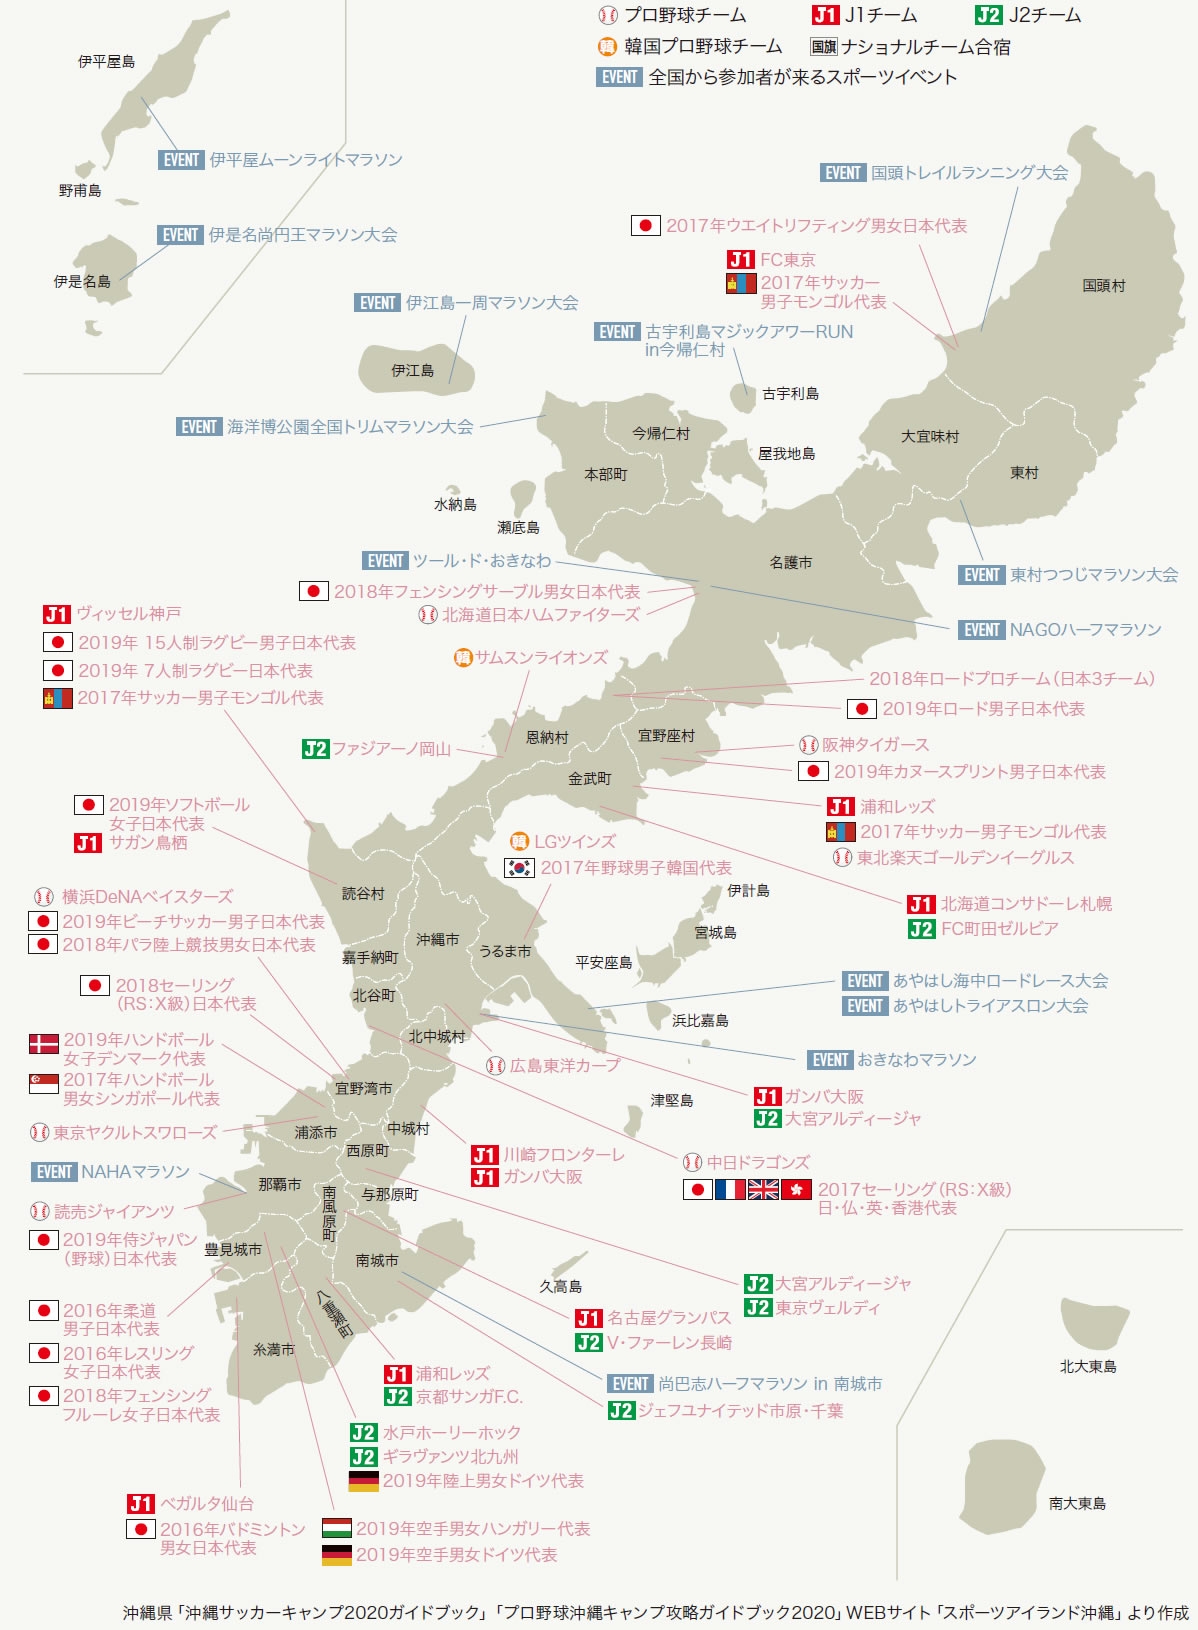 スポーツアイランド沖縄MAP2